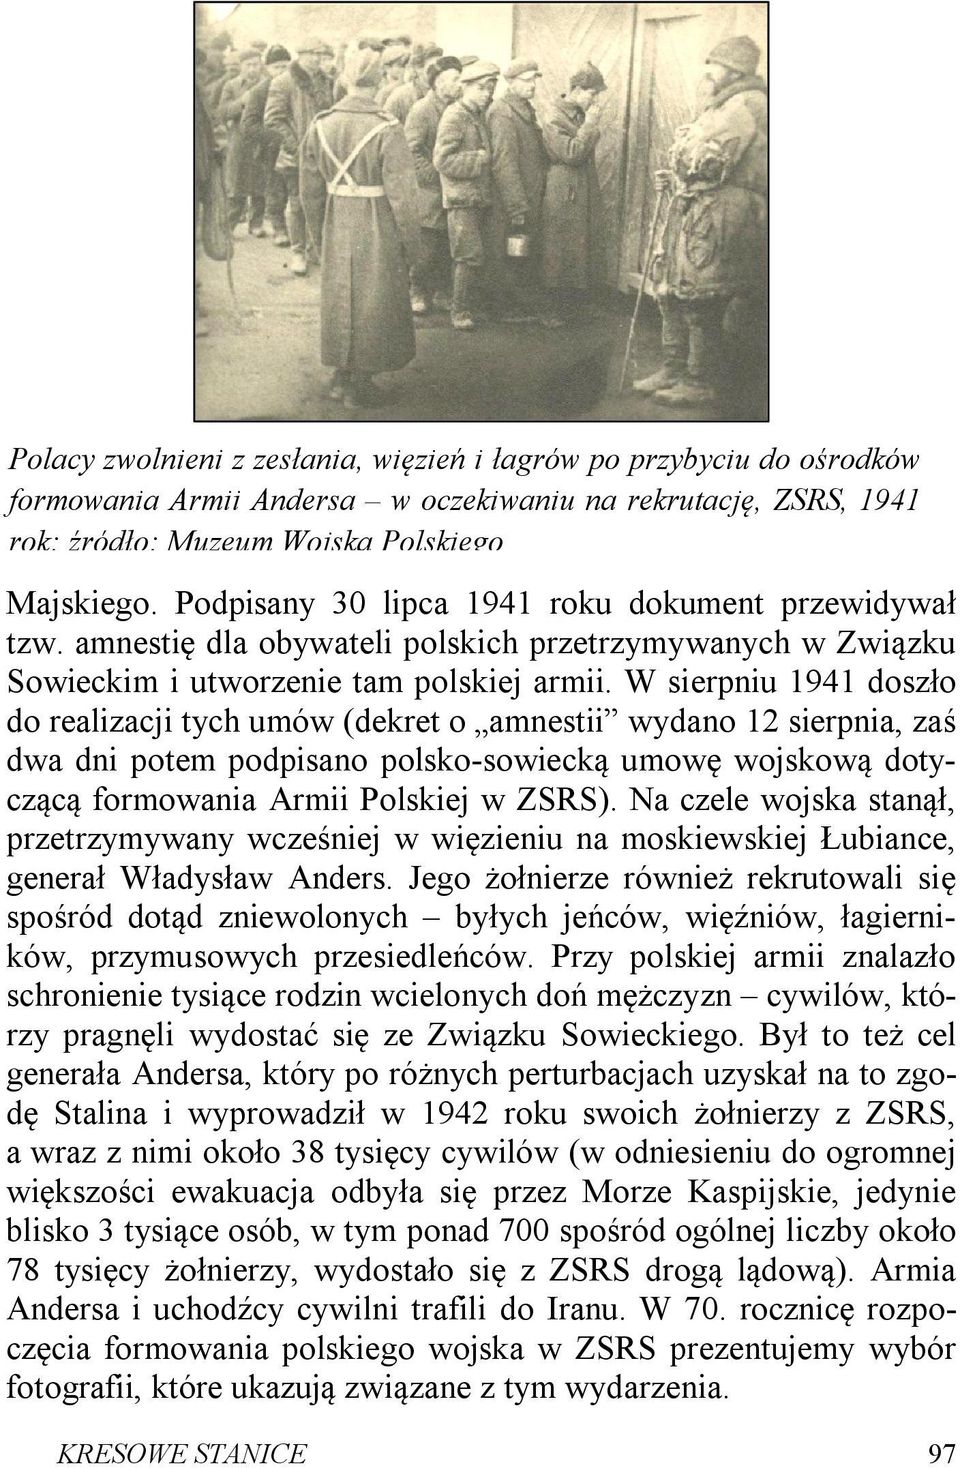 W sierpniu 1941 doszło do realizacji tych umów (dekret o amnestii wydano 12 sierpnia, zaś dwa dni potem podpisano polsko-sowiecką umowę wojskową dotyczącą formowania Armii Polskiej w ZSRS).